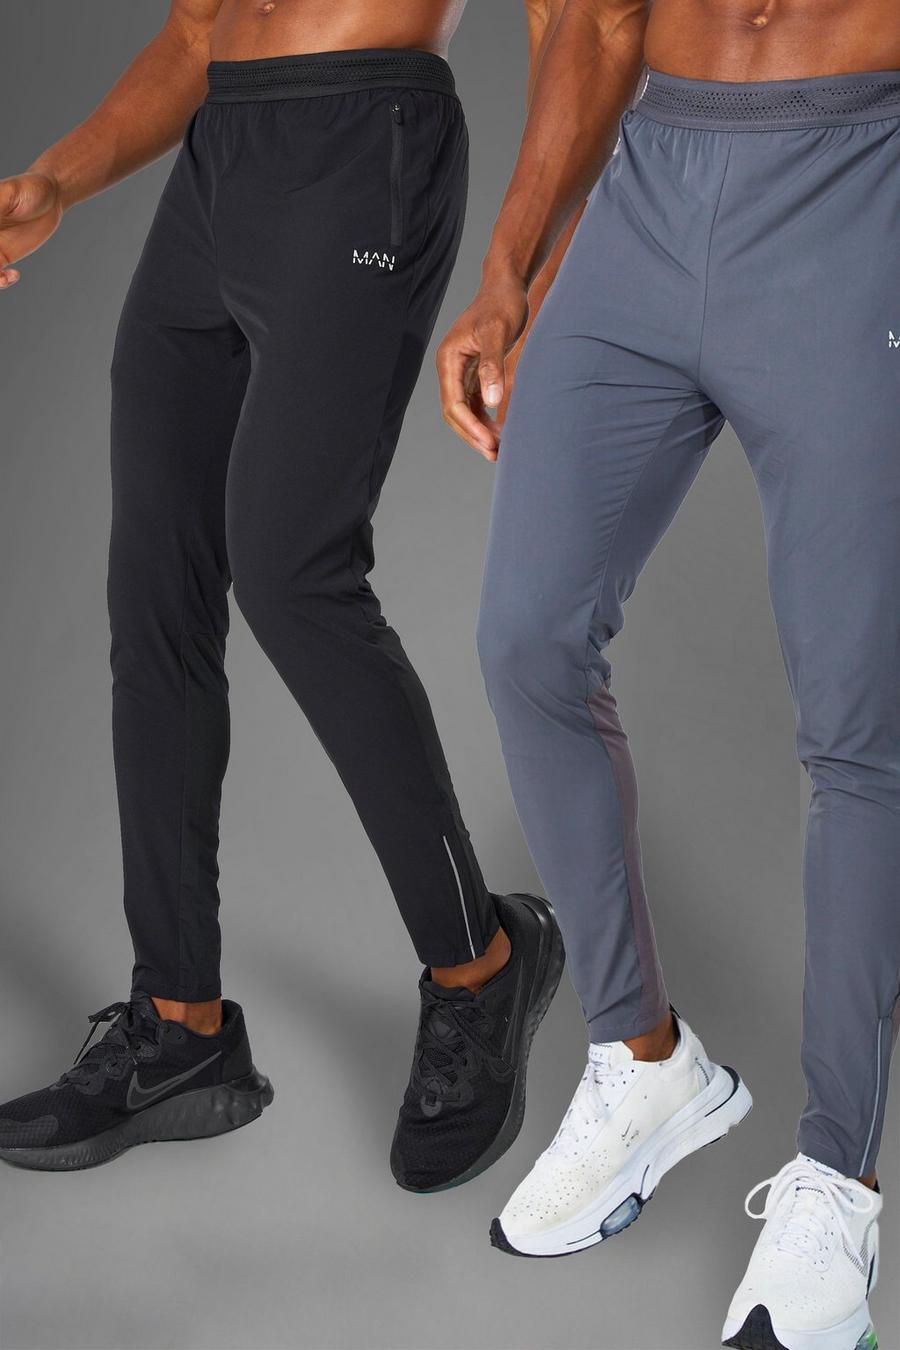 Pantaloni tuta leggeri Man Active Gym - set di 2 paia, Black